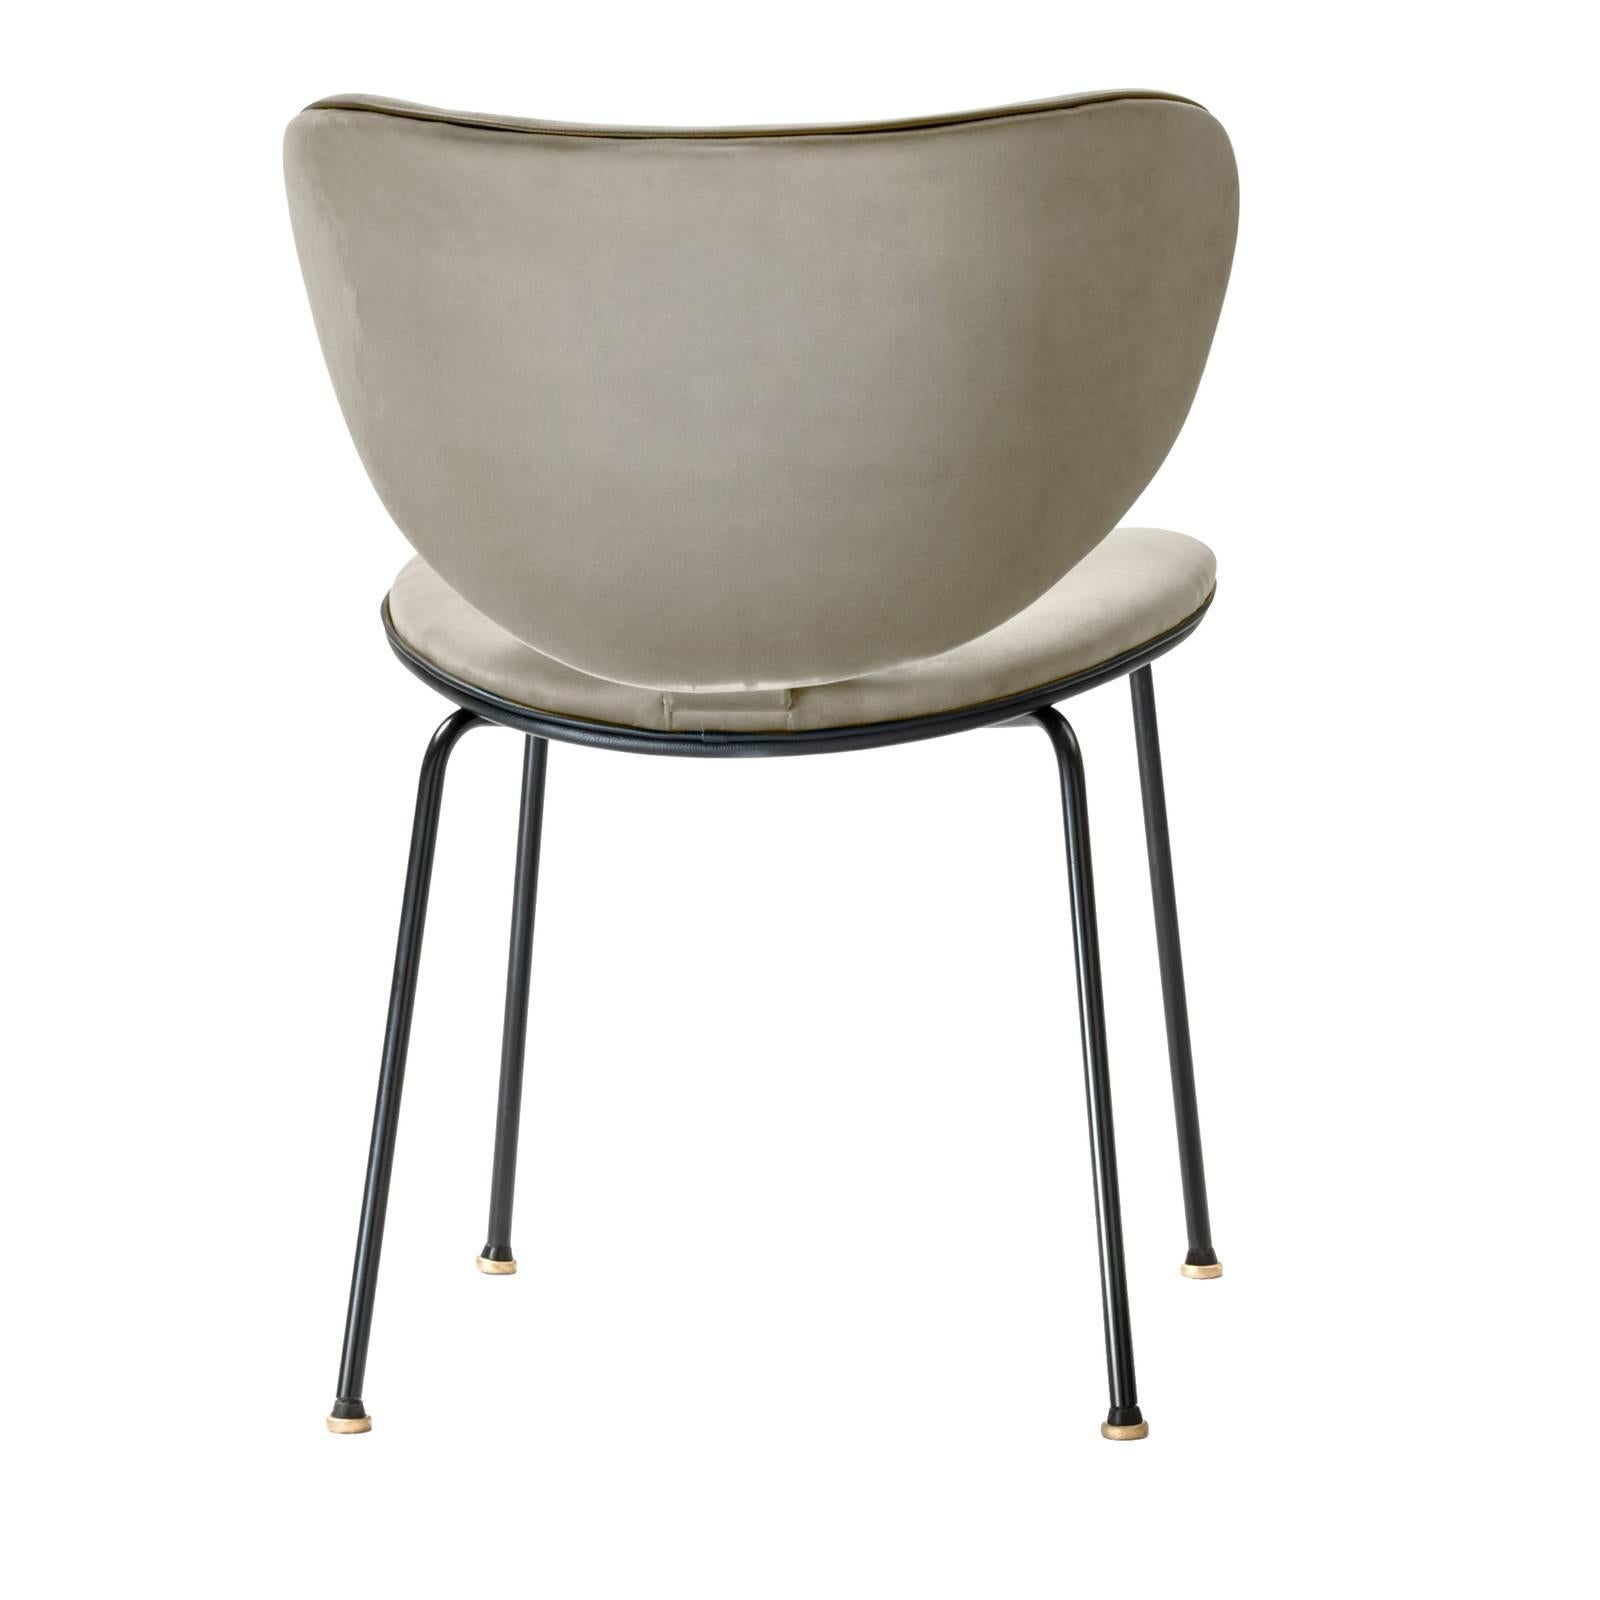 Cette chaise exclusive fusionne style fonctionnel et confort avec son look minimal et ses formes linéaires. La structure métallique a une finition noire mate et supporte une assise et un dossier incurvés en bois de hêtre avec un rembourrage en